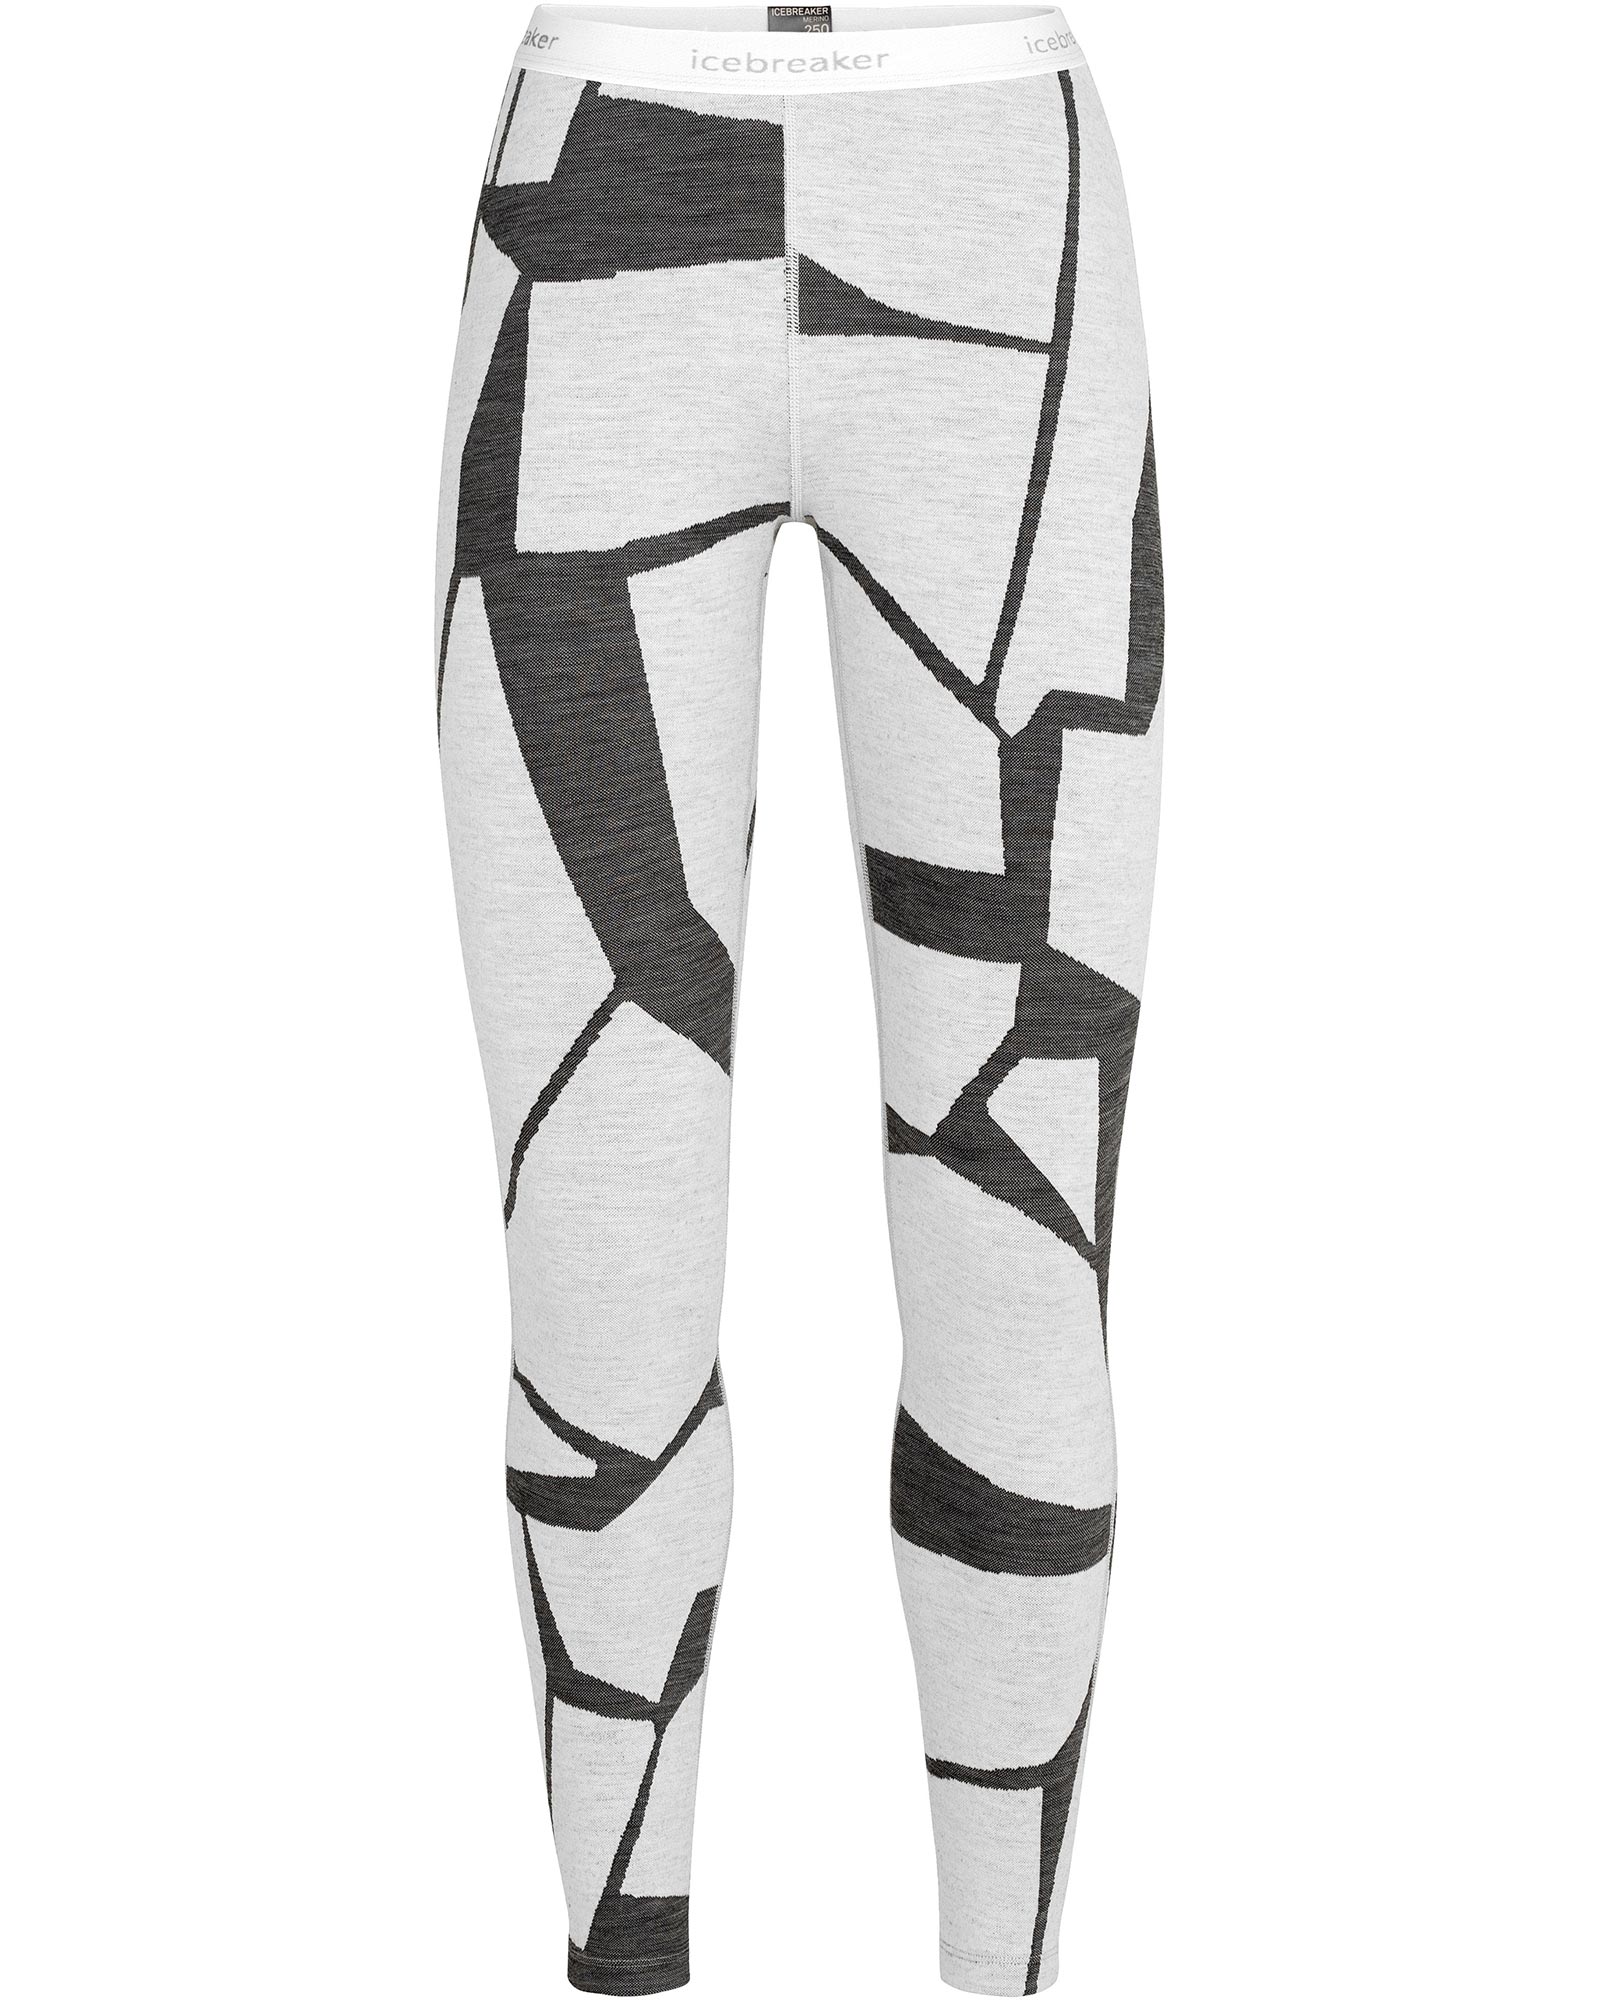 Icebreaker 250 Vertex Women’s Merino Leggings - Fractured Snow Print XS